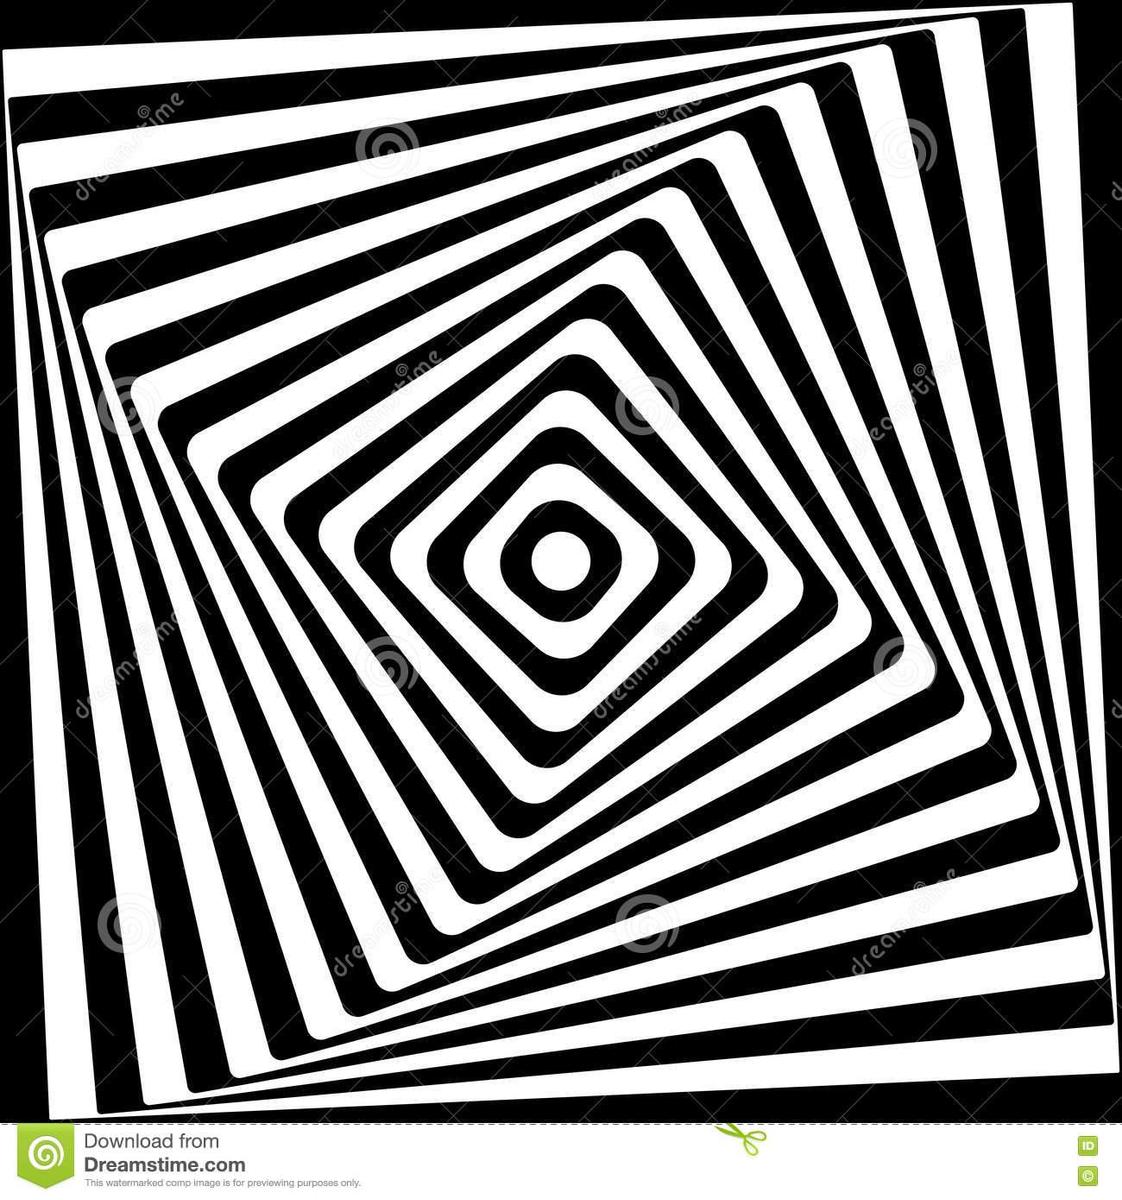 abstrakte-quadrat-spiralen-schwarzweiss-